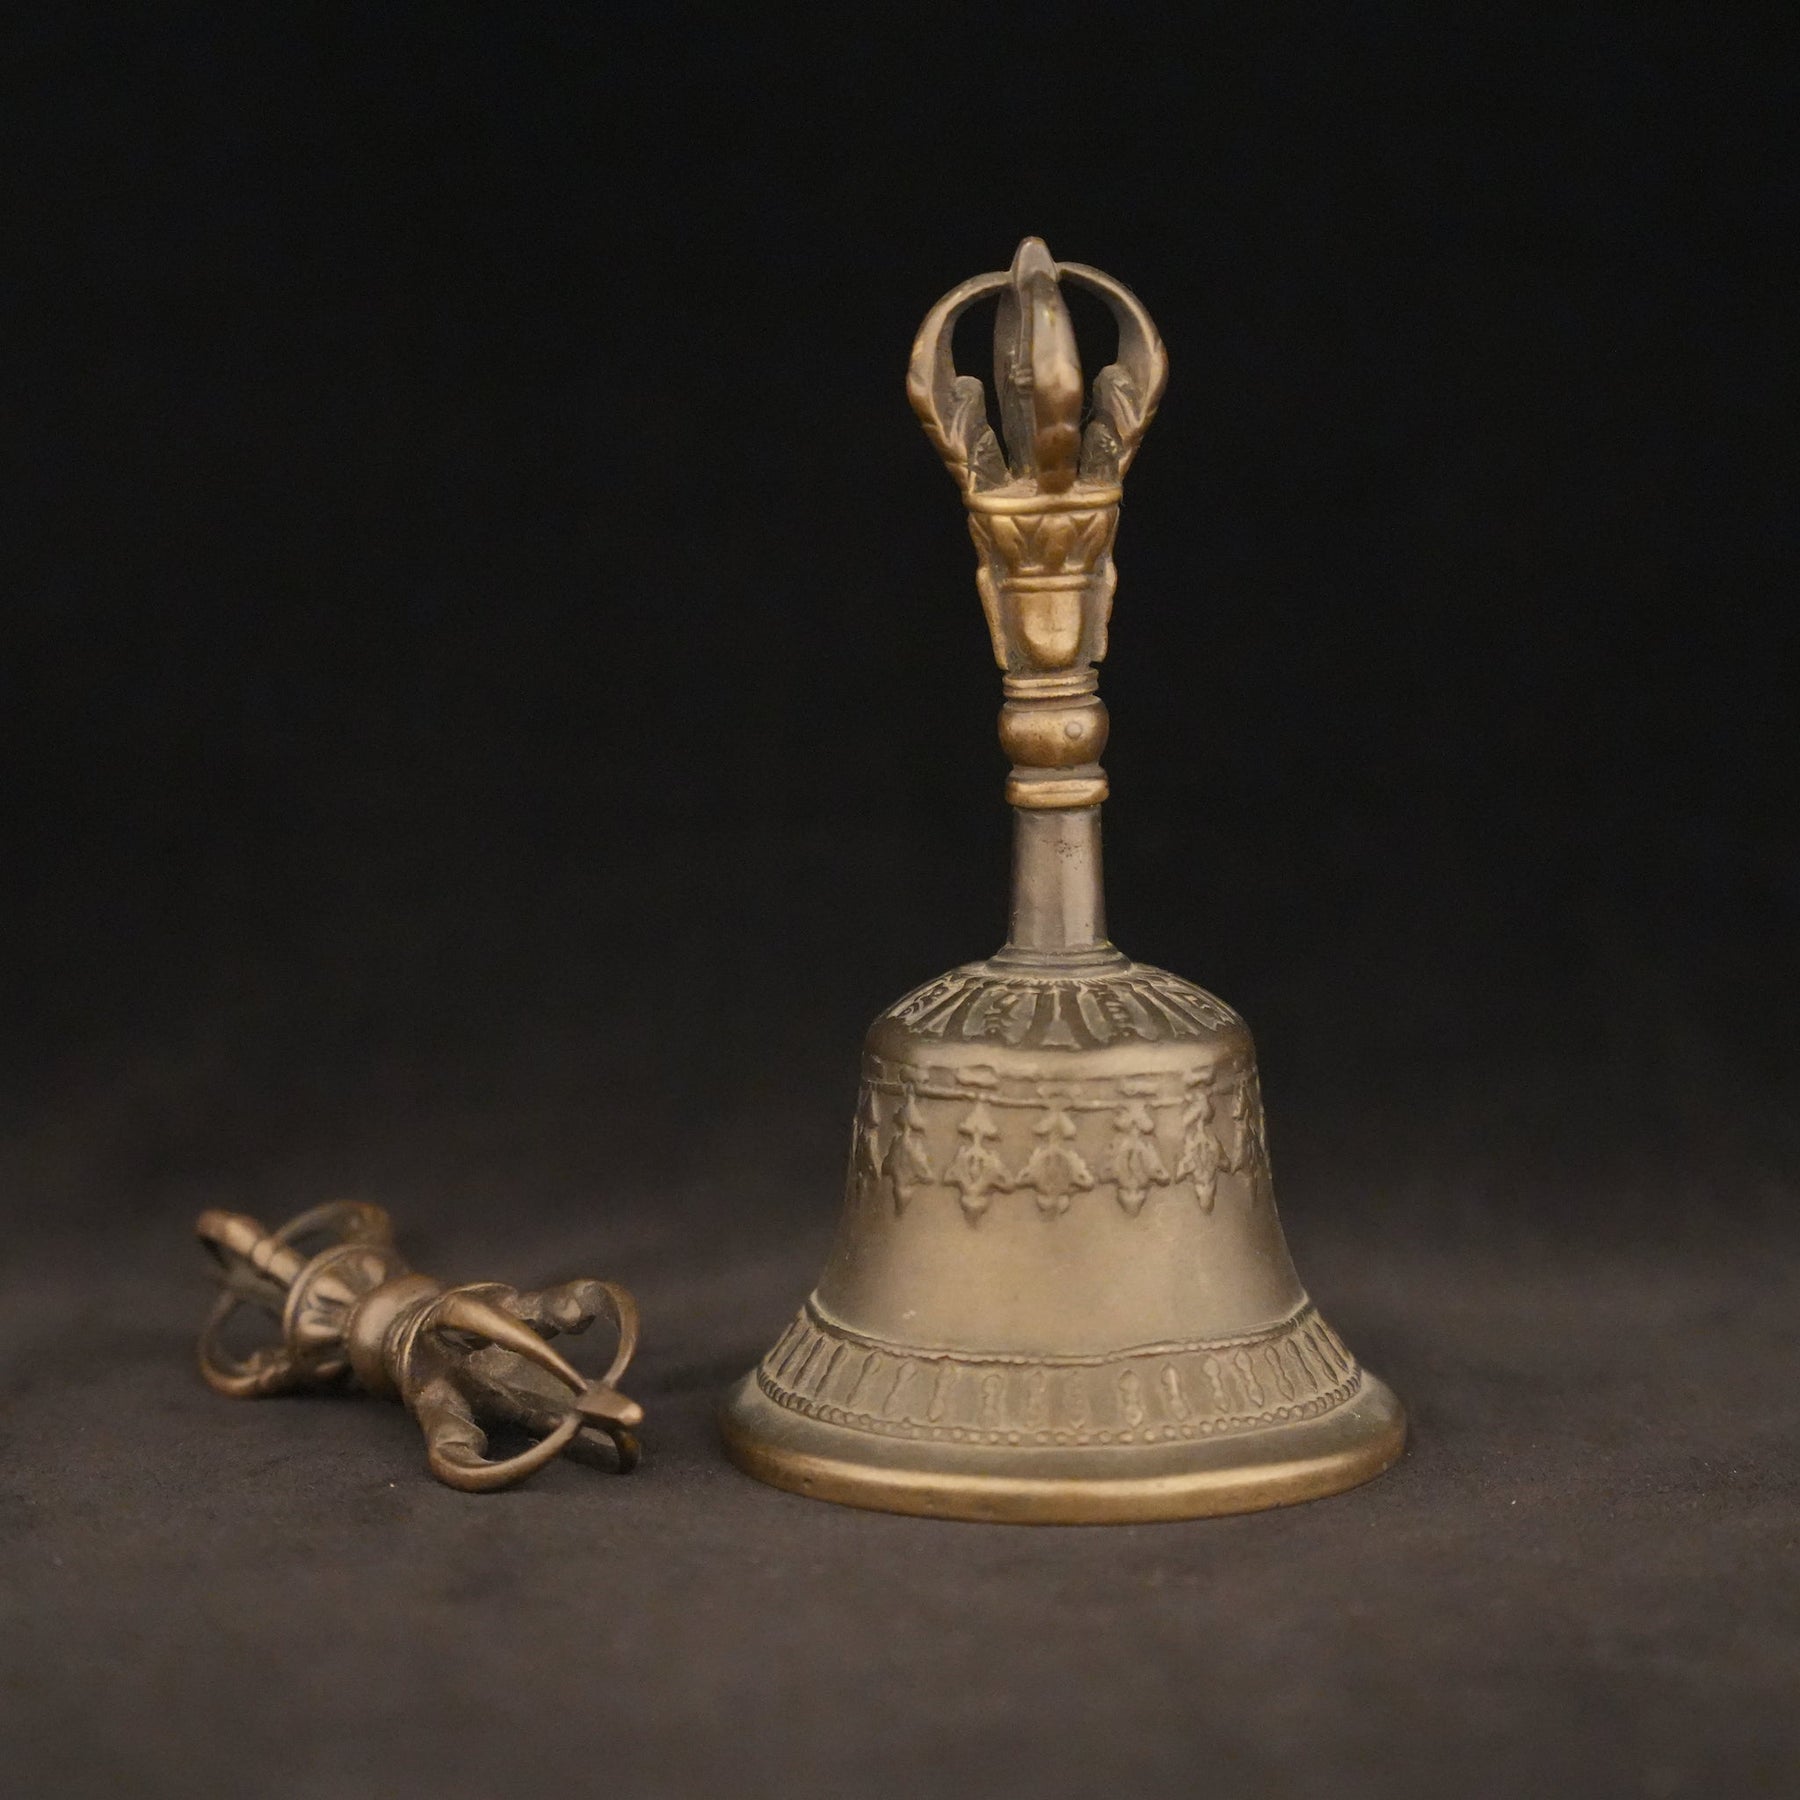 Hand Ring Bell Tibetan Hand Bell Witch Bells Music Hand Bells Portable  Handbell Dinner Hand Bell Wedding Hand Bells Tibetan Bells Handheld Bell  Note